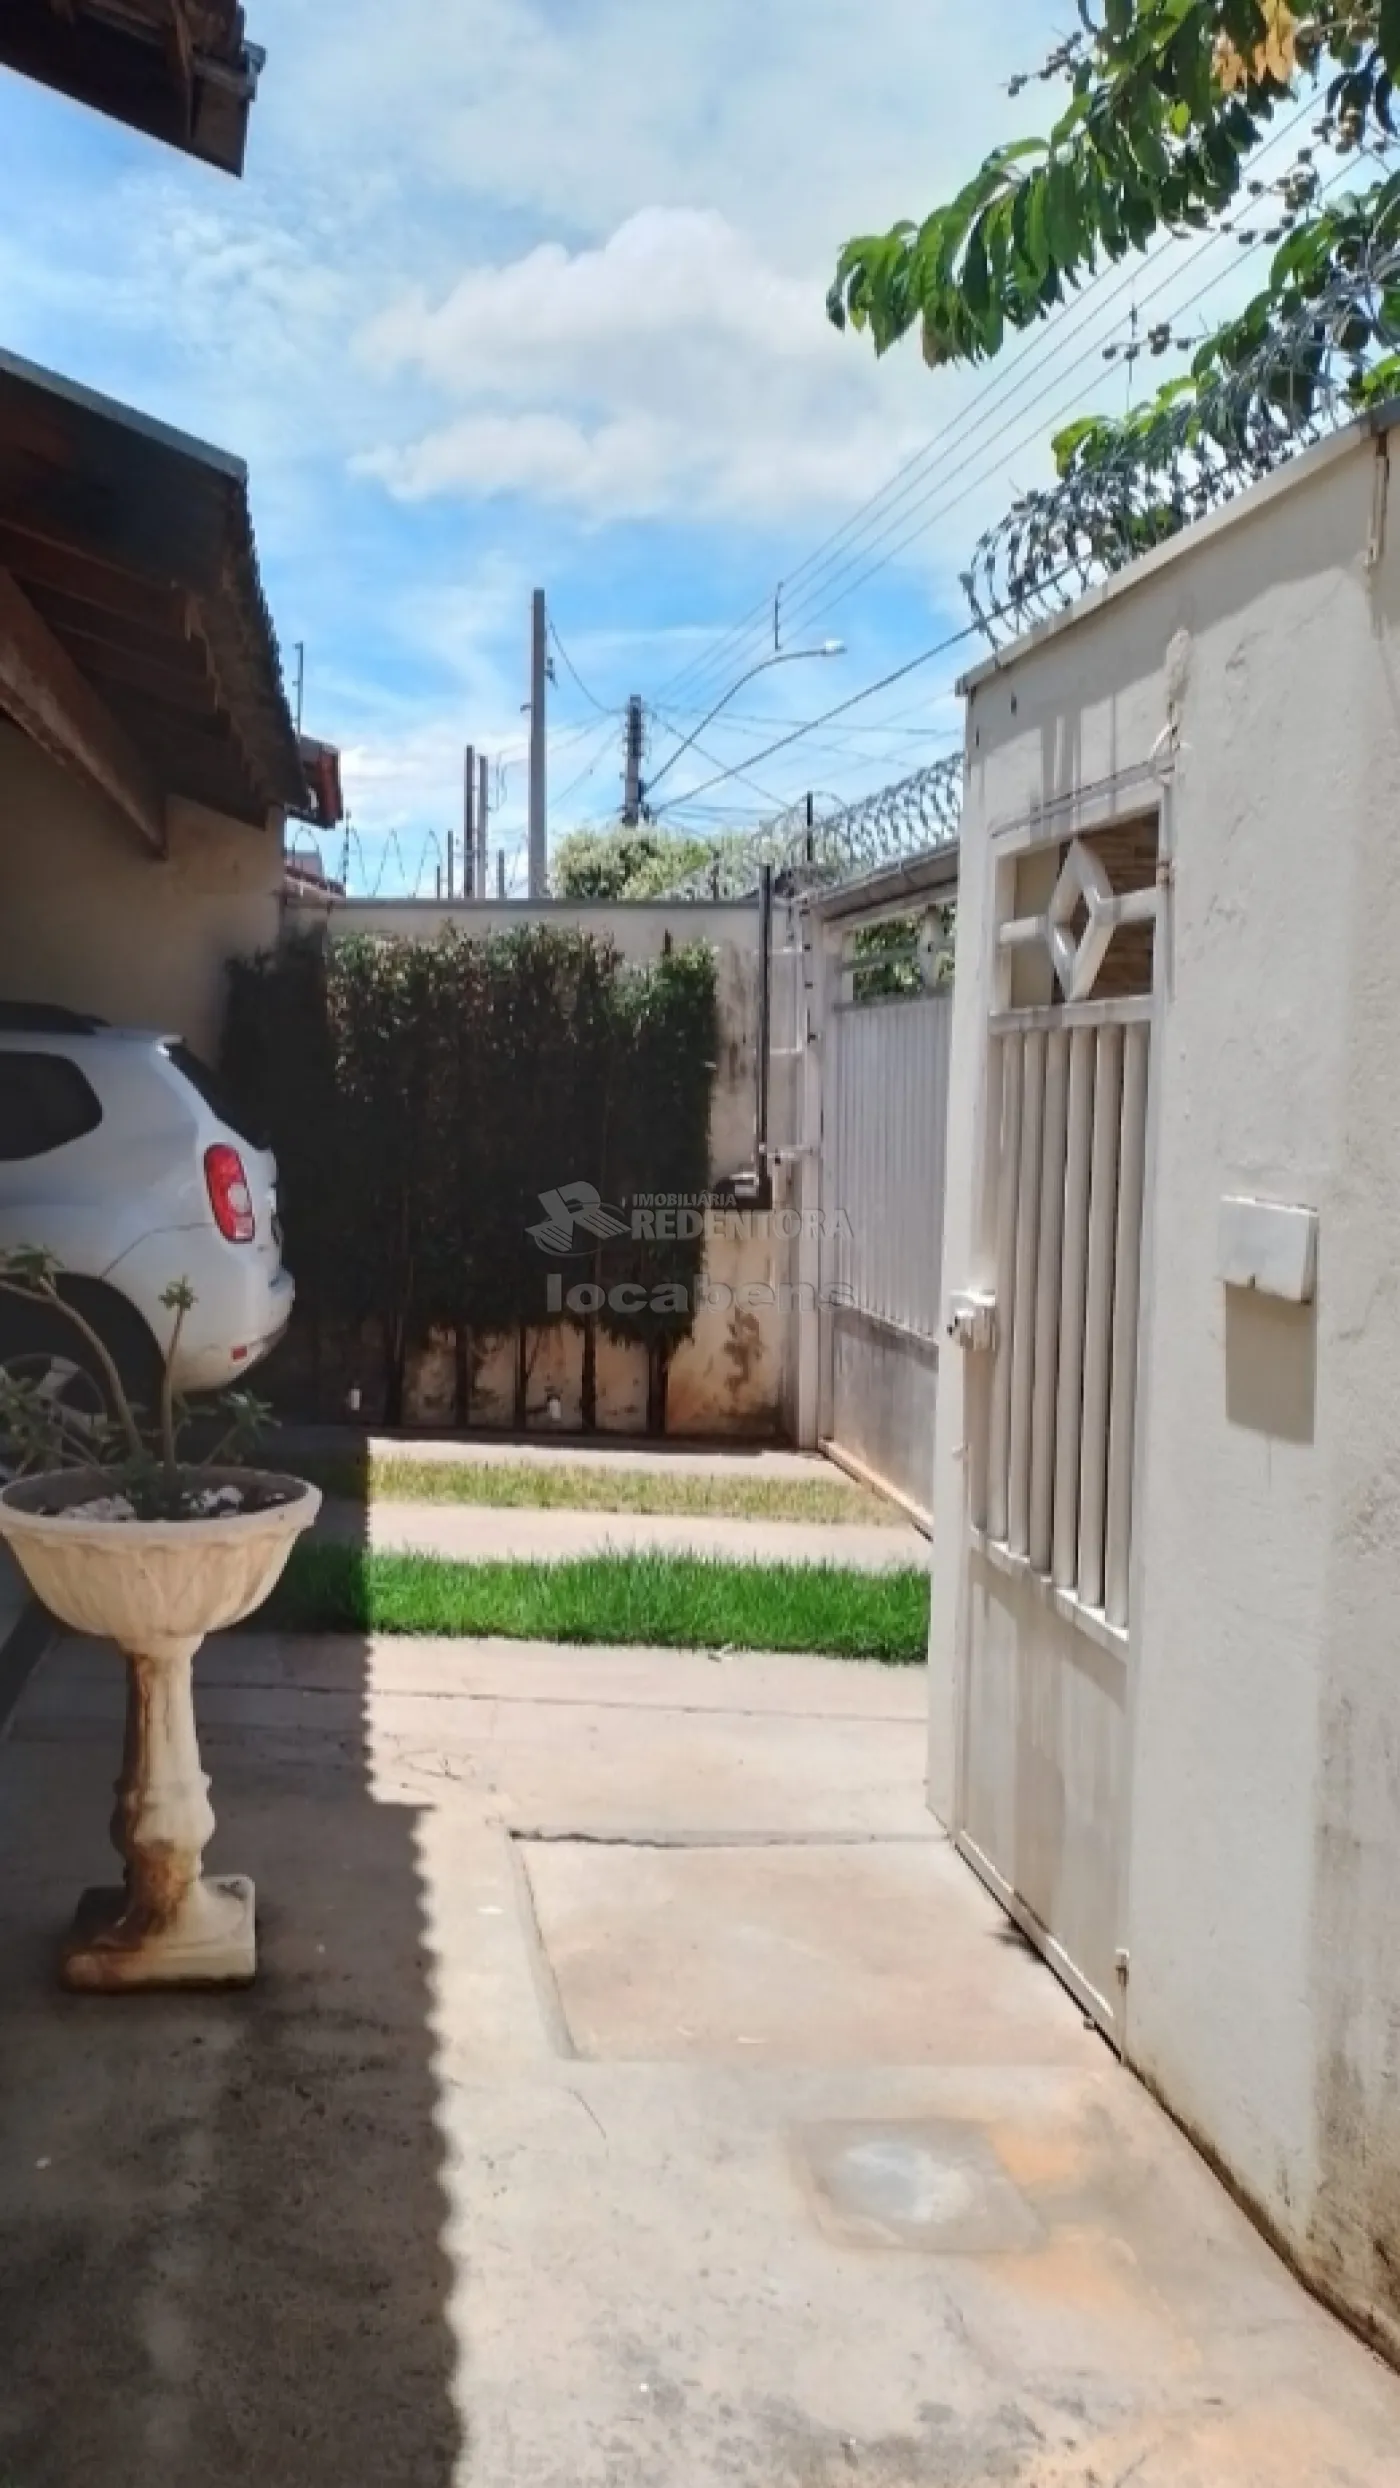 Alugar Casa / Padrão em São José do Rio Preto apenas R$ 1.700,00 - Foto 2